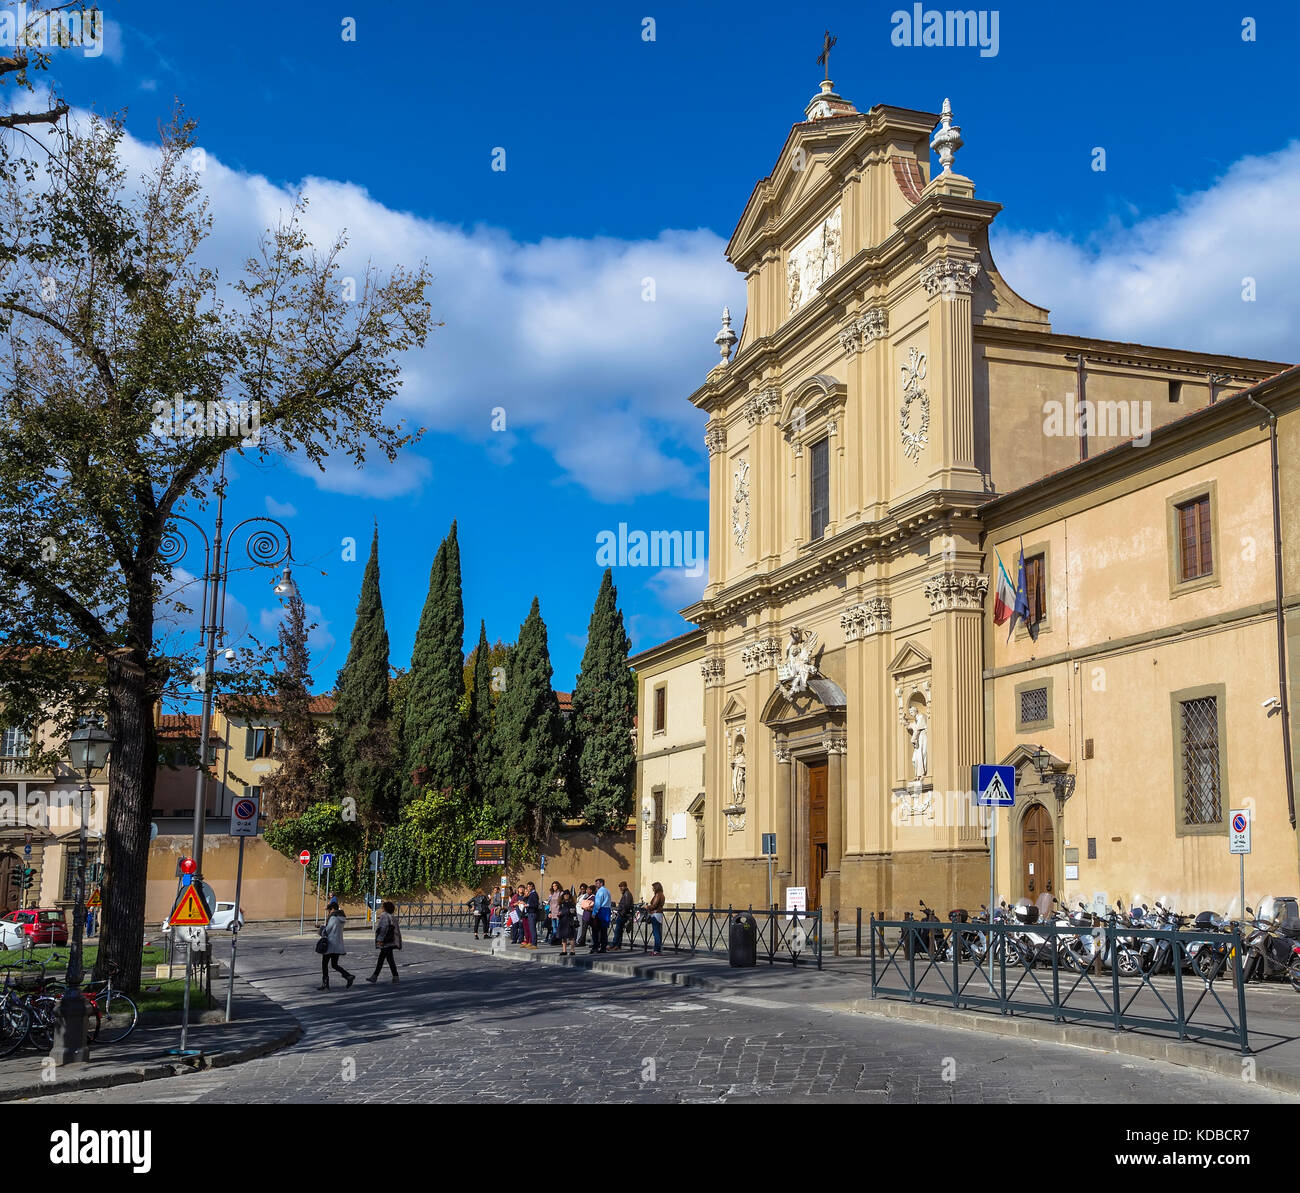 Italie, Florence - 27 octobre 2014 : la piazza San Marco est situé dans la partie nord du centre historique de Florence en Italie. Banque D'Images